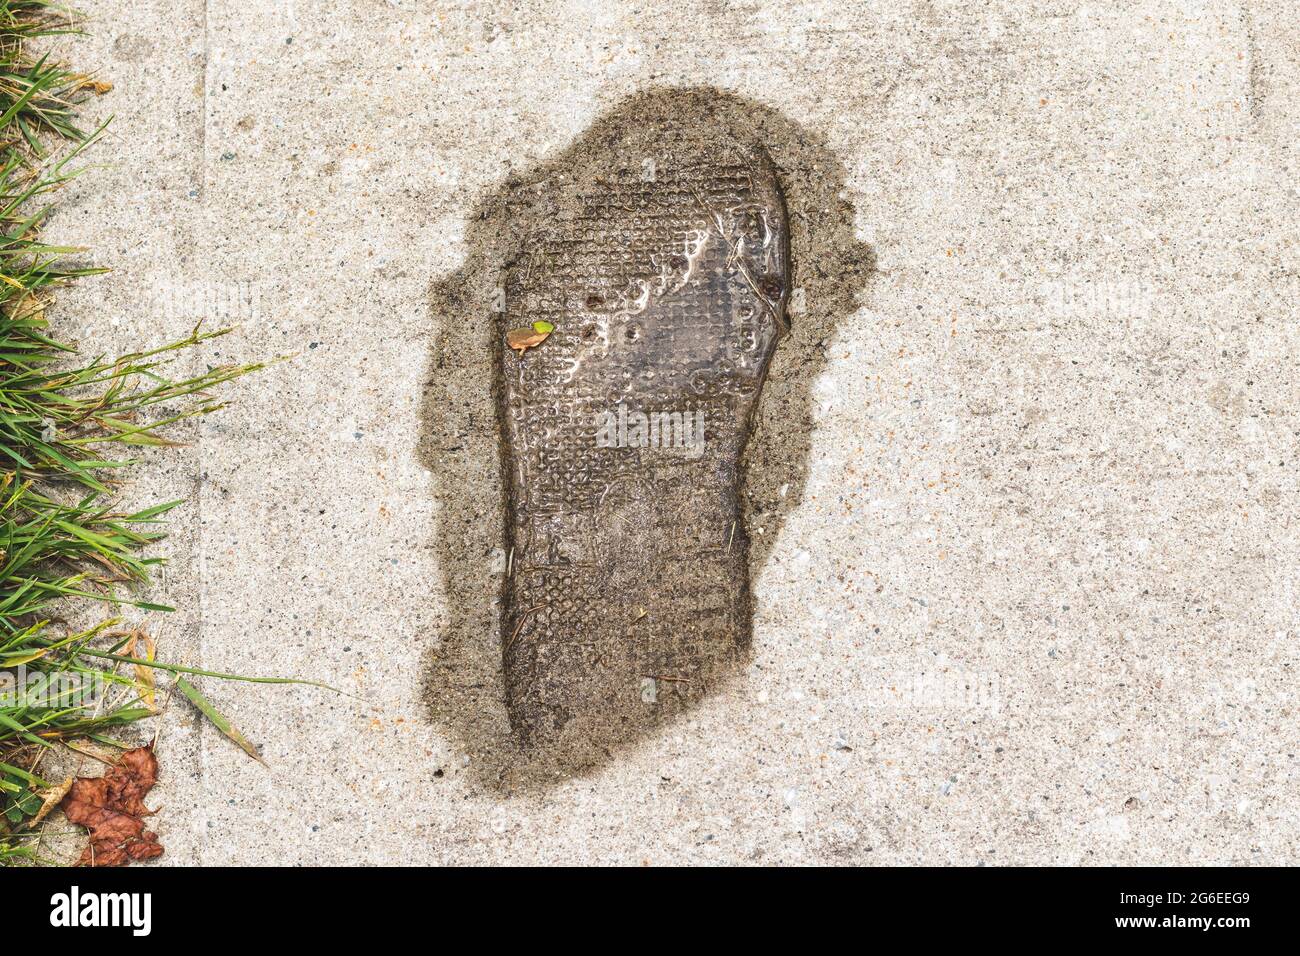 Der Schuhdruck ist in Zement eingeprägt, nass vom Regen gefärbt, mit einem kleinen Wasserbecken darin. Gras auf der Seite des gepflasterten Gehwegs. Stockfoto